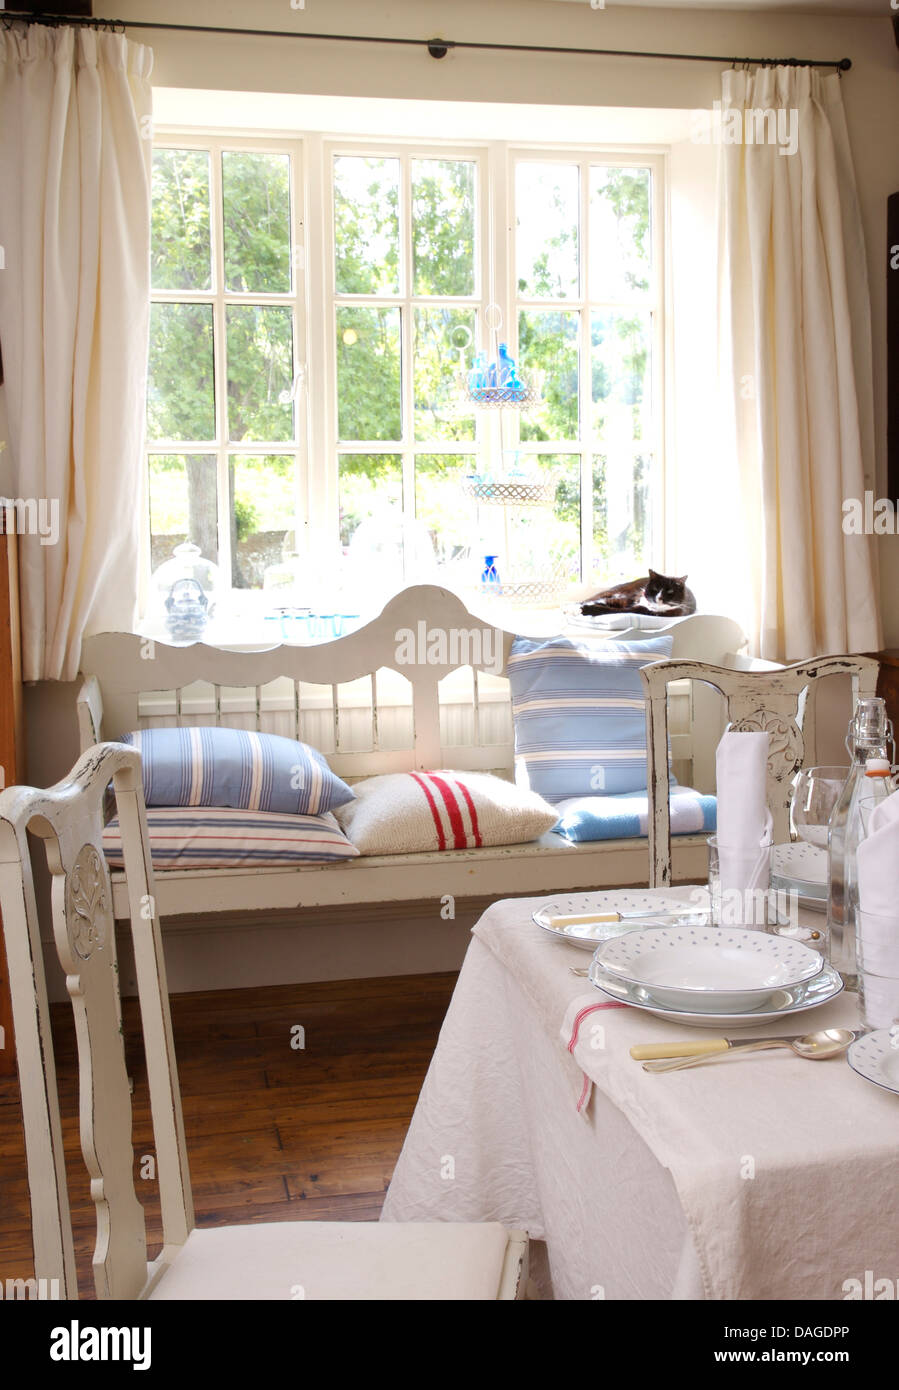 Coussin rayé bleu sur blanc s'installer en face de la fenêtre avec des rideaux de lin blanc dans la salle à manger avec un tissu blanc sur la table Banque D'Images